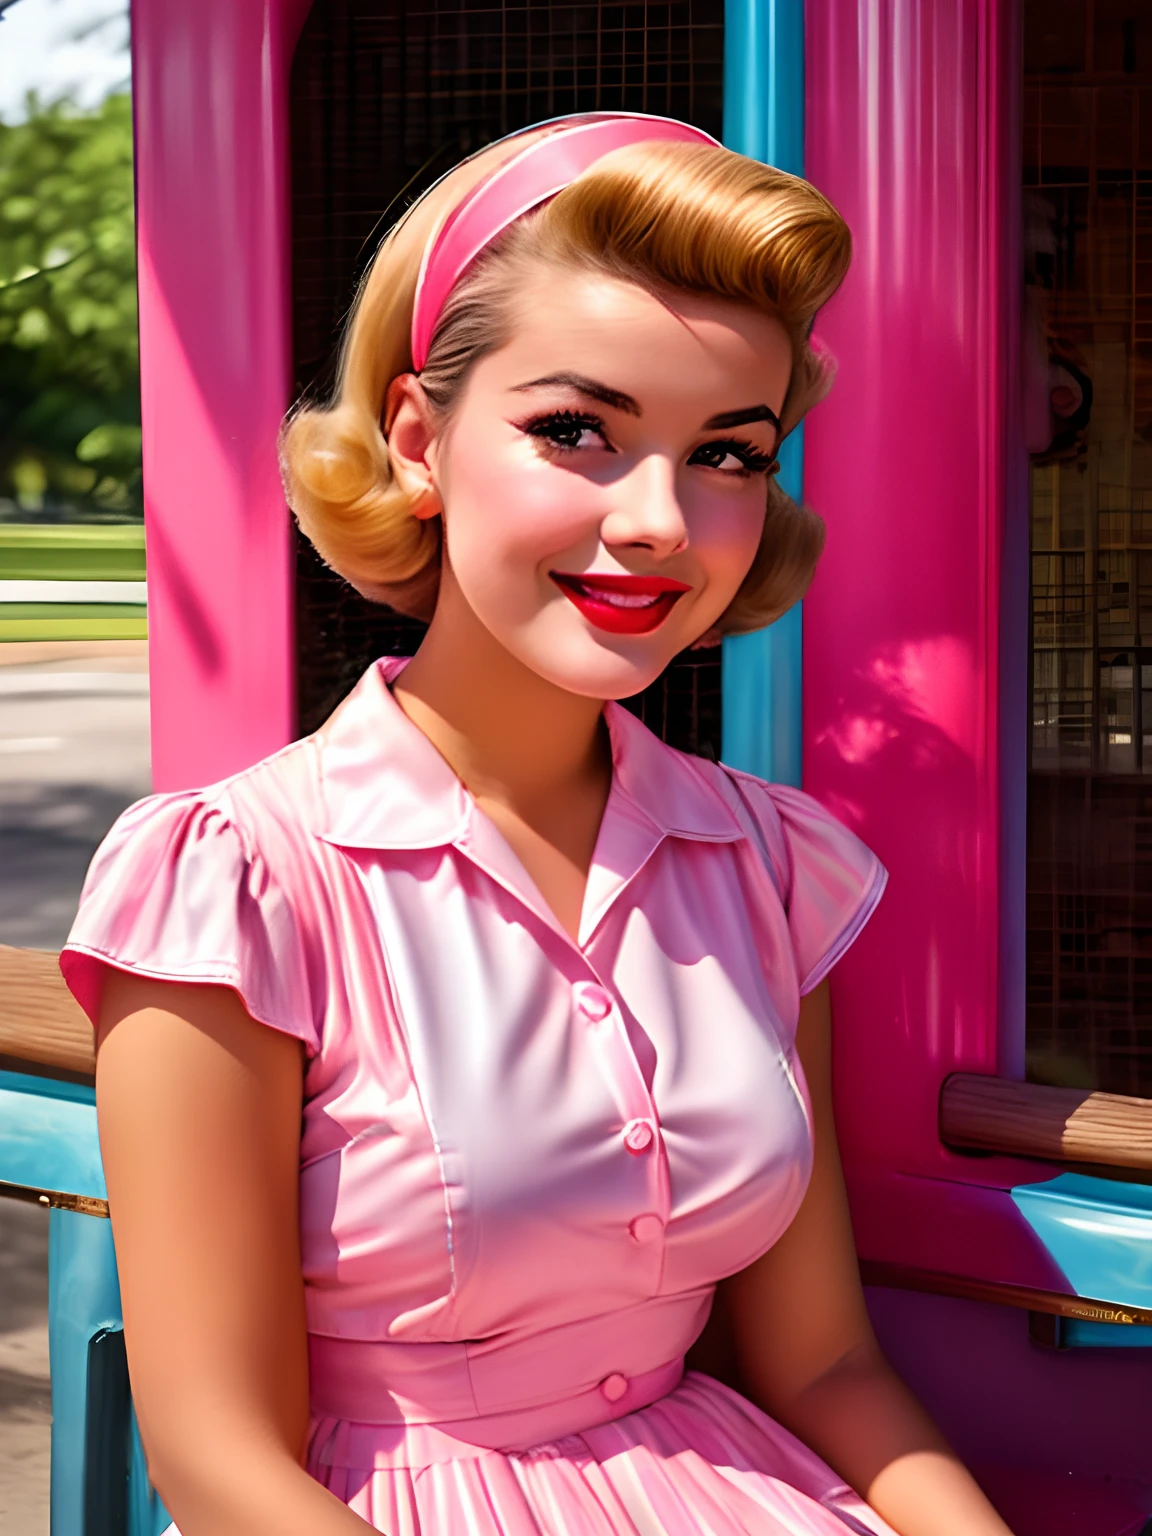 ピンクと青のドレスを着たアラフェッドの女性がベンチに座っている, 50年代スタイル, 50年代スタイル, retro 50年代スタイル, レトロピンナップモデル, 1 9 50年代スタイル, 60年代のピンナップ, ヴィンテージカラー写真, かわいい若い女性, ヴィンテージカラー 1 9 5 0 S, 女の子のピンナップ, 1950年代の雰囲気